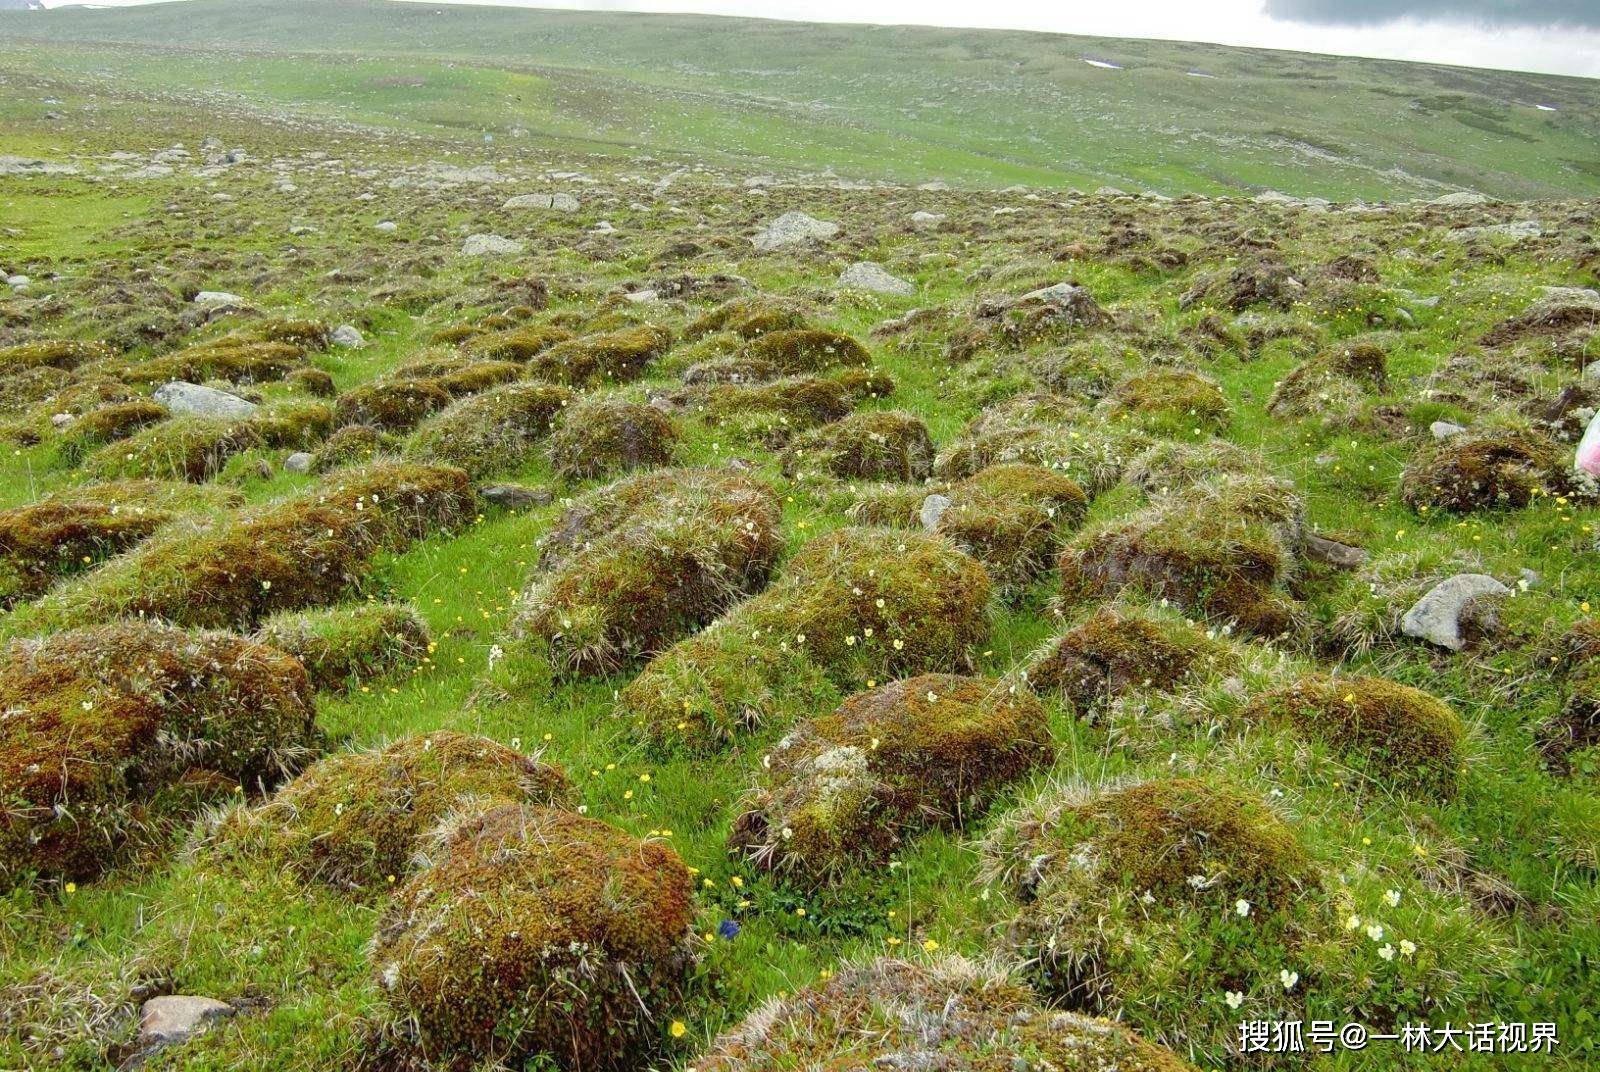 在地球上,这种生态系统称为苔原,它是以草类,灌木,地衣和苔藓构成的